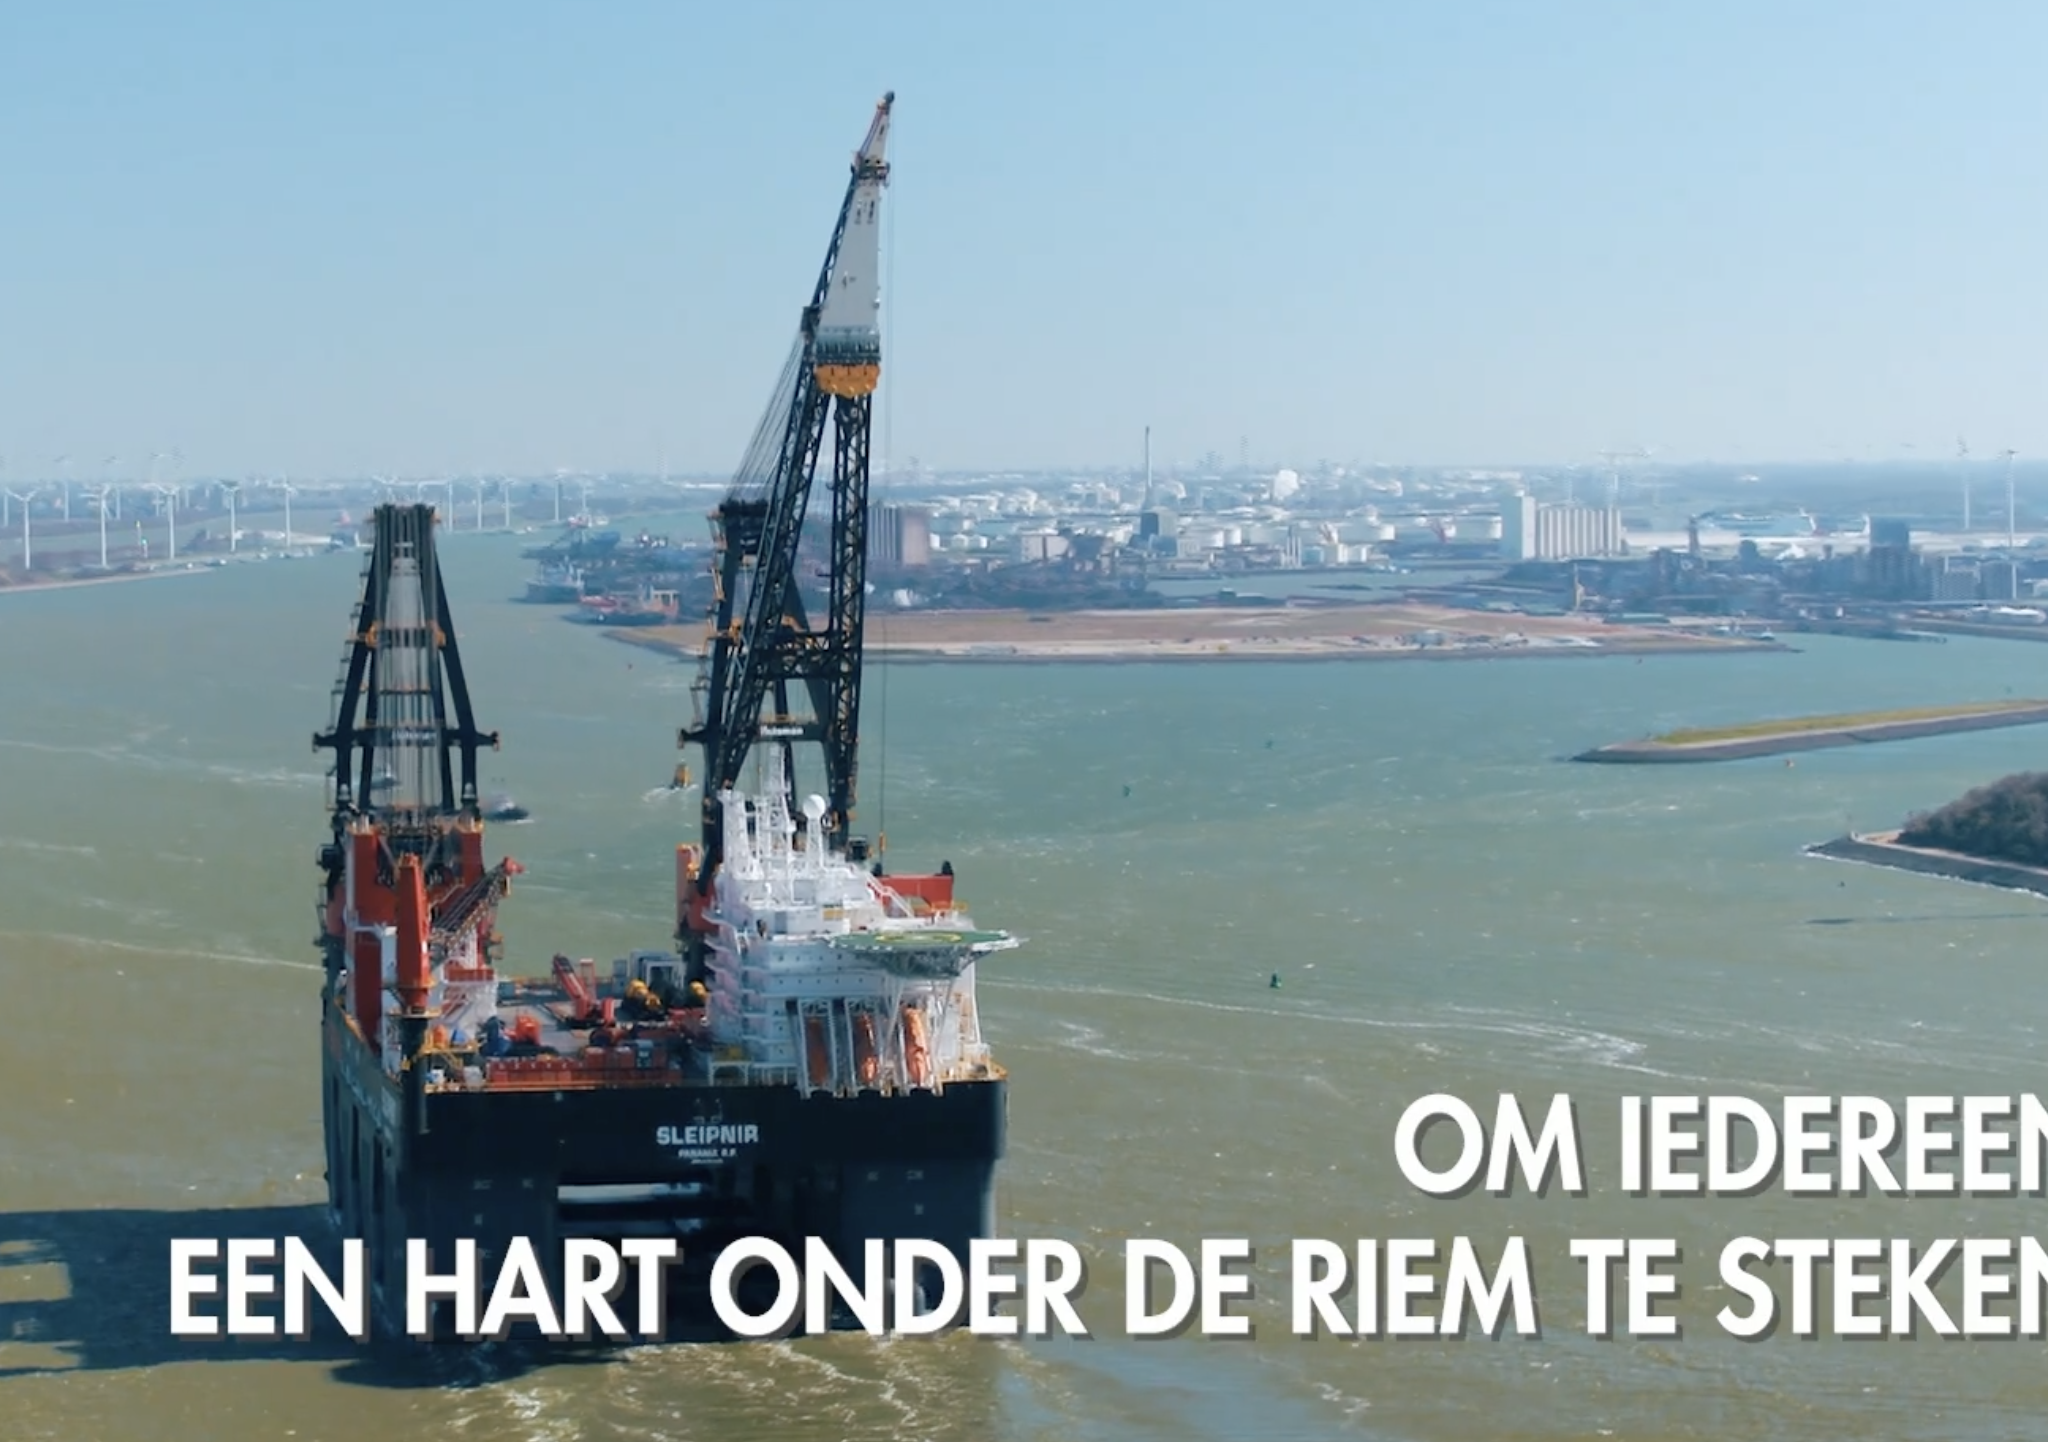 Om 12.00 uur 8 april klinken in Rotterdam de scheepstoeters.